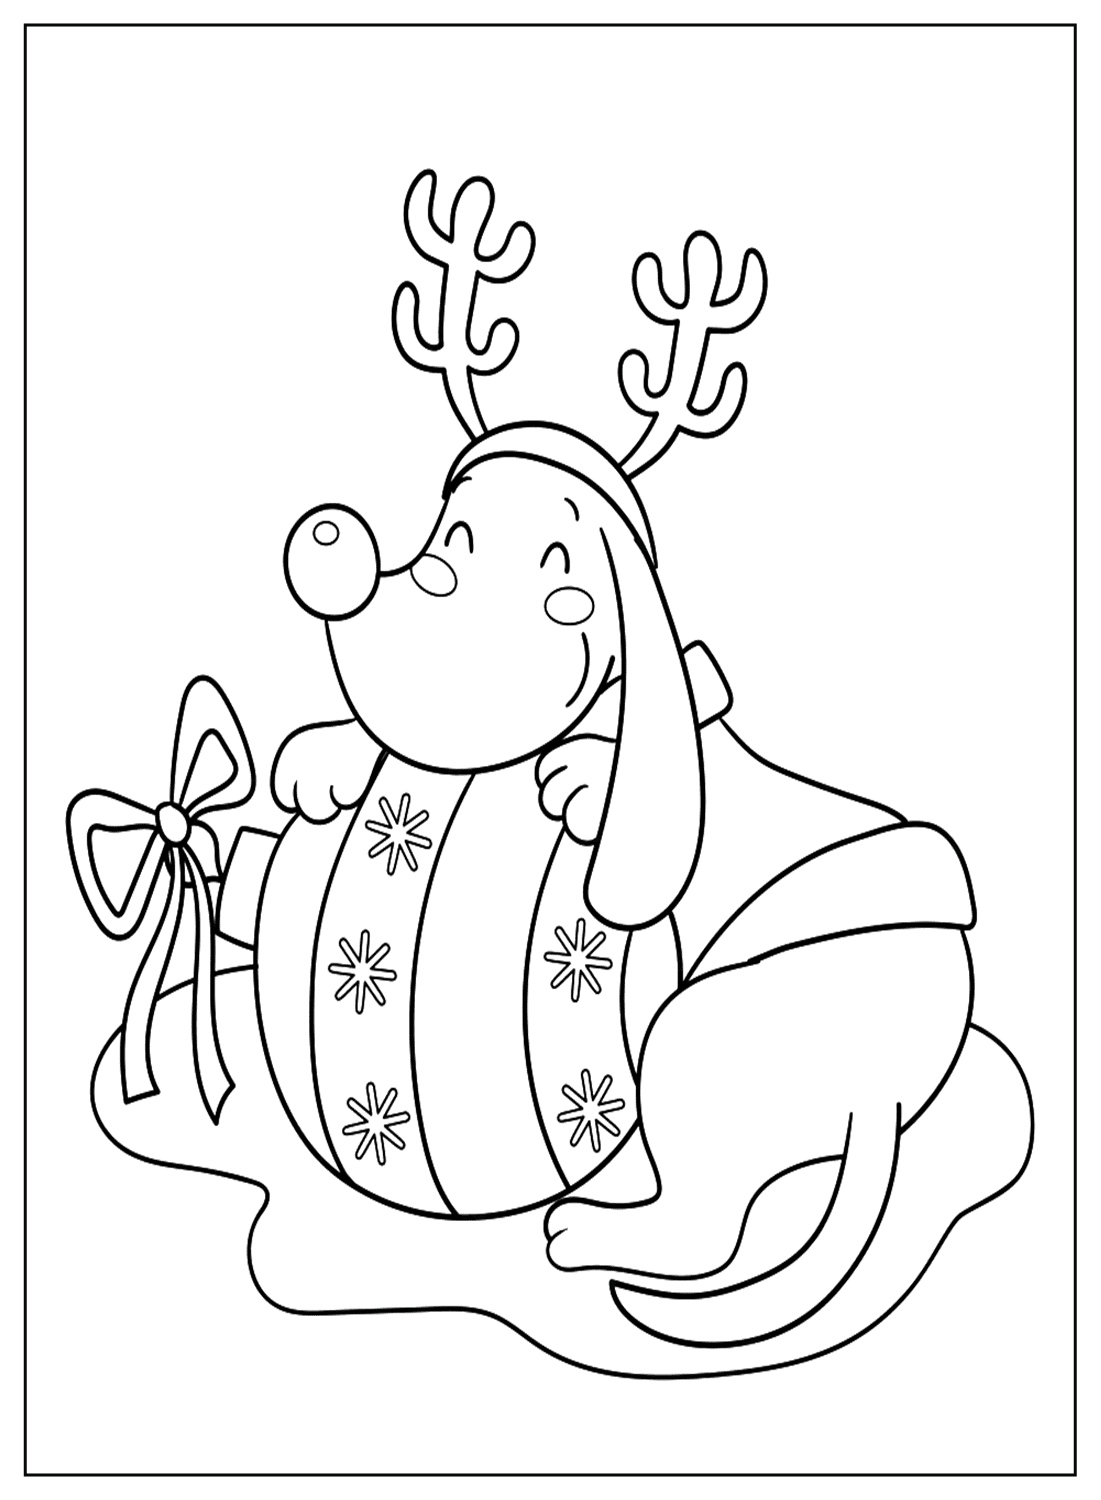 Lindas páginas para colorear de Rudolph de Rudolph